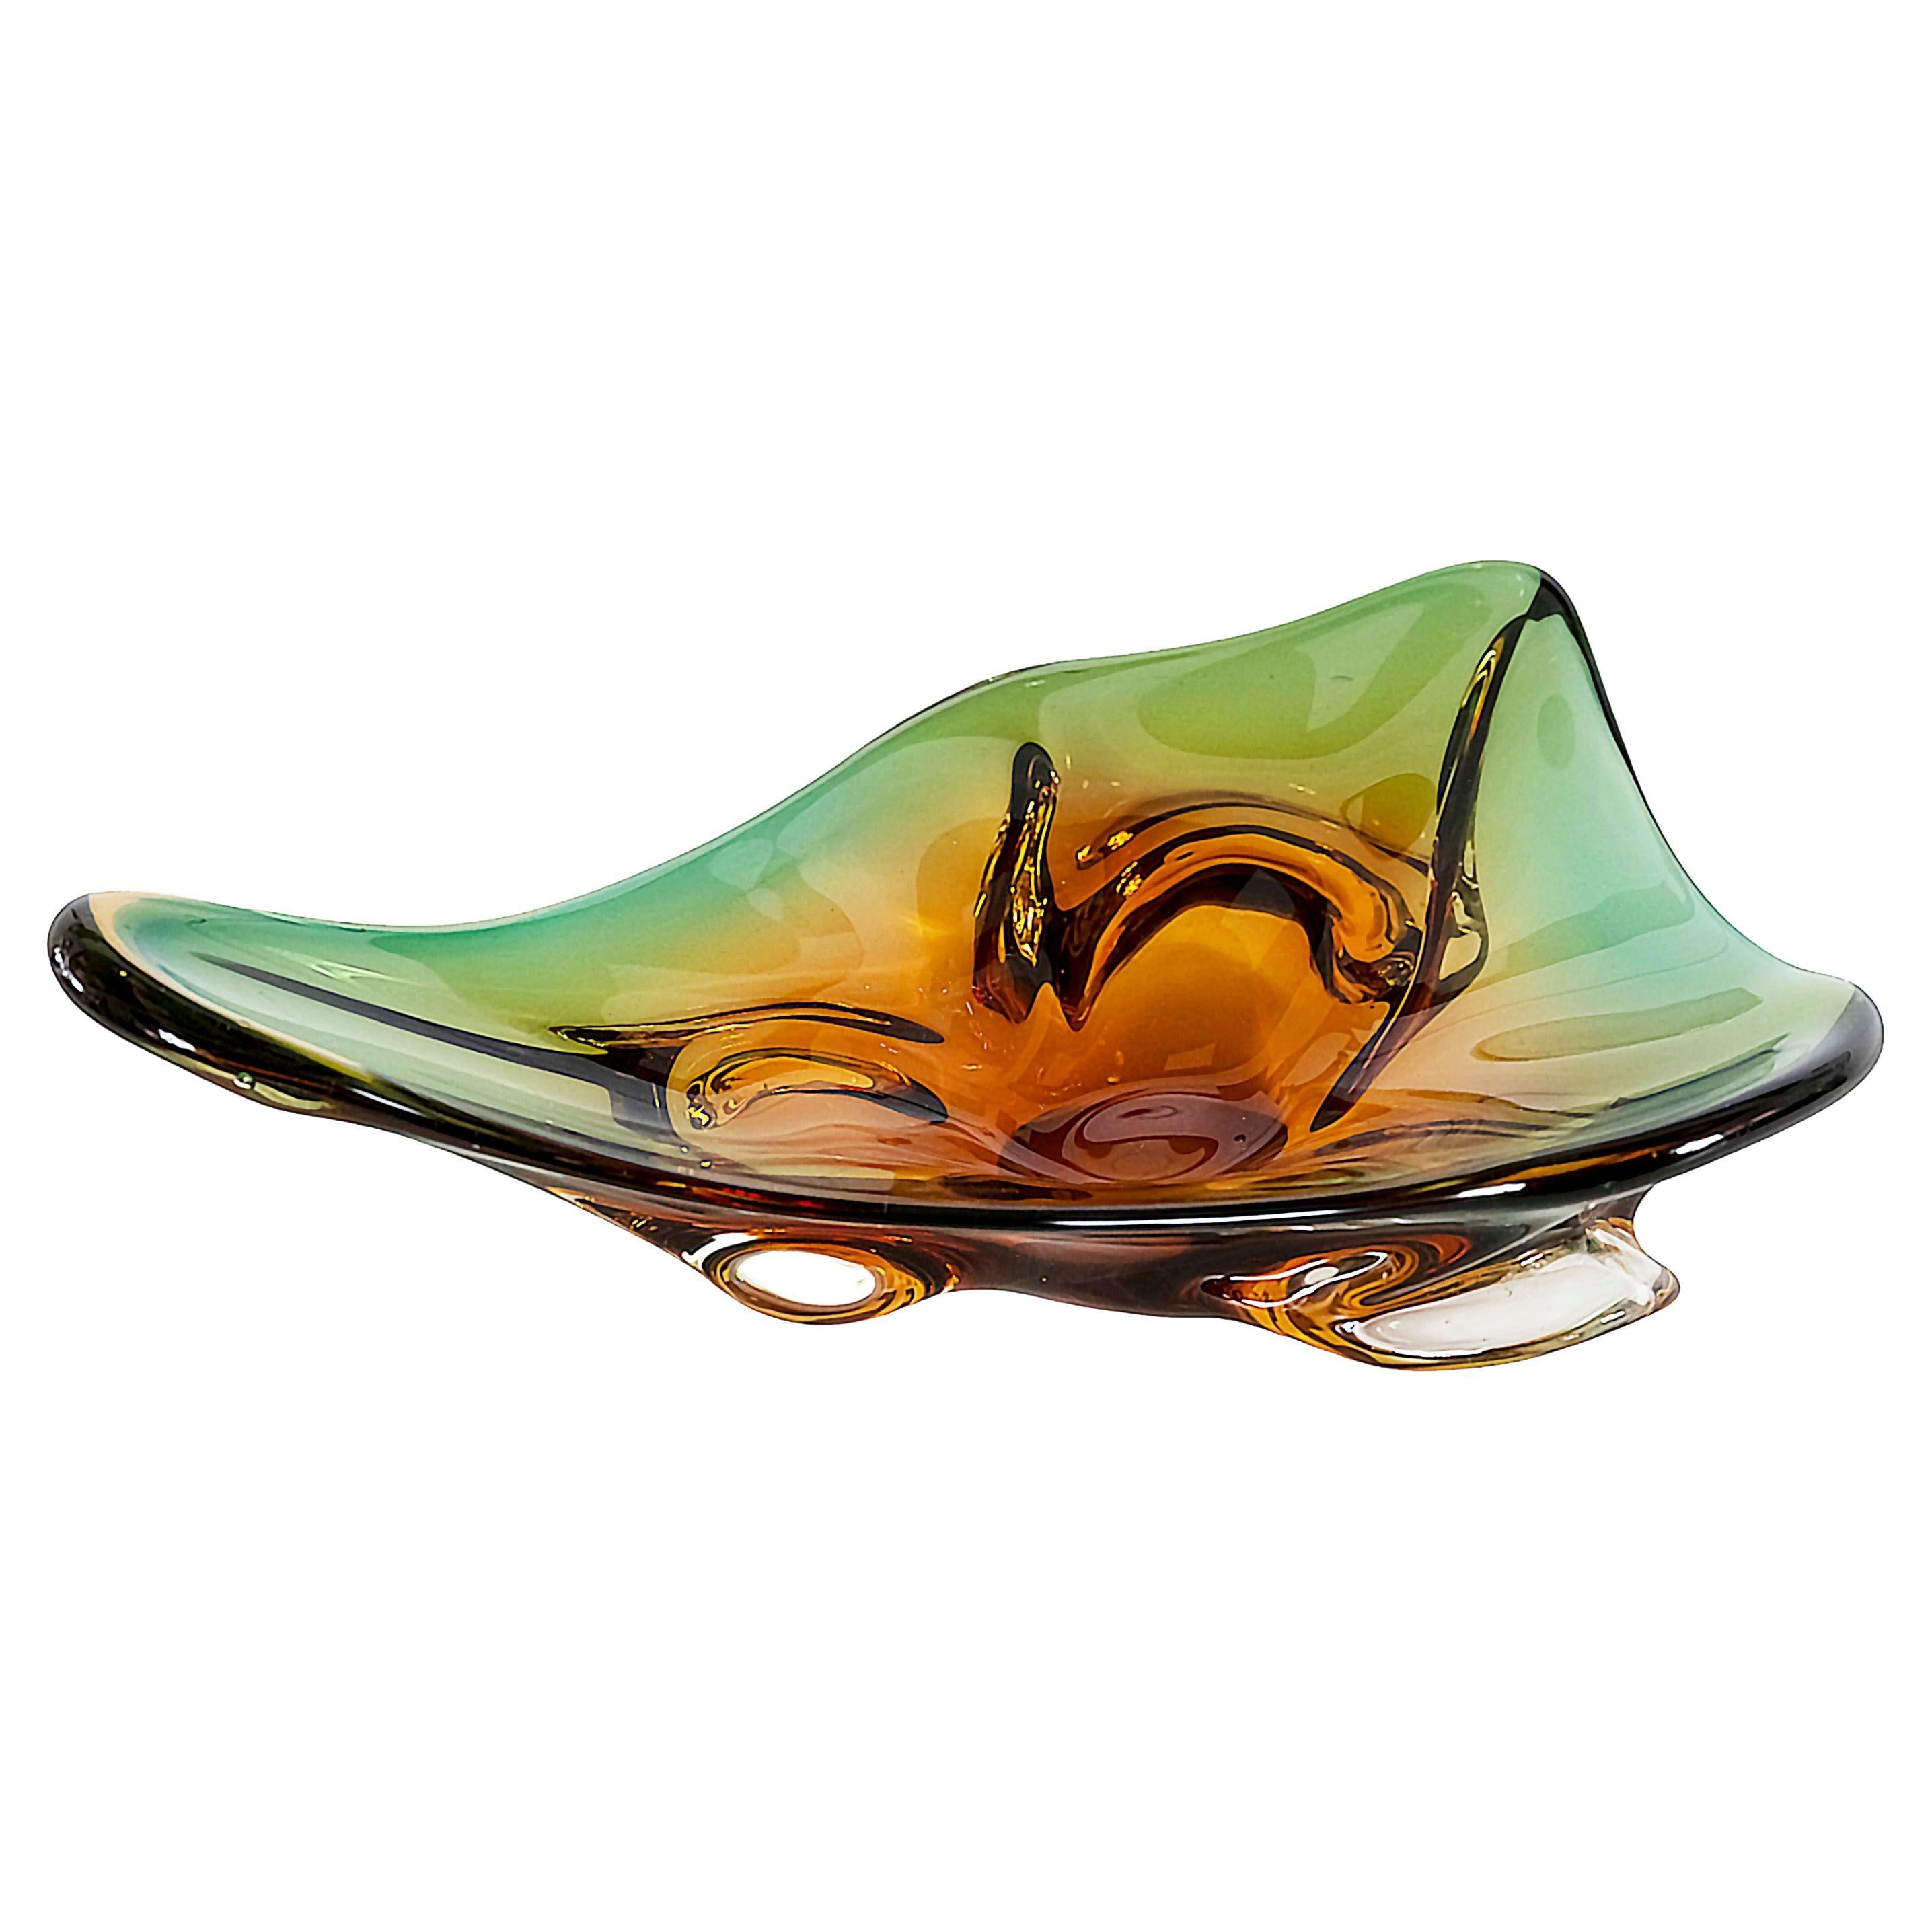 Vase / centre de table vintage italien en verre de Murano fait à la main, de forme asymétrique.
Le verre est de couleur jaune/orange/vert.
Lourd et solide.
Très bon/excellent état.
